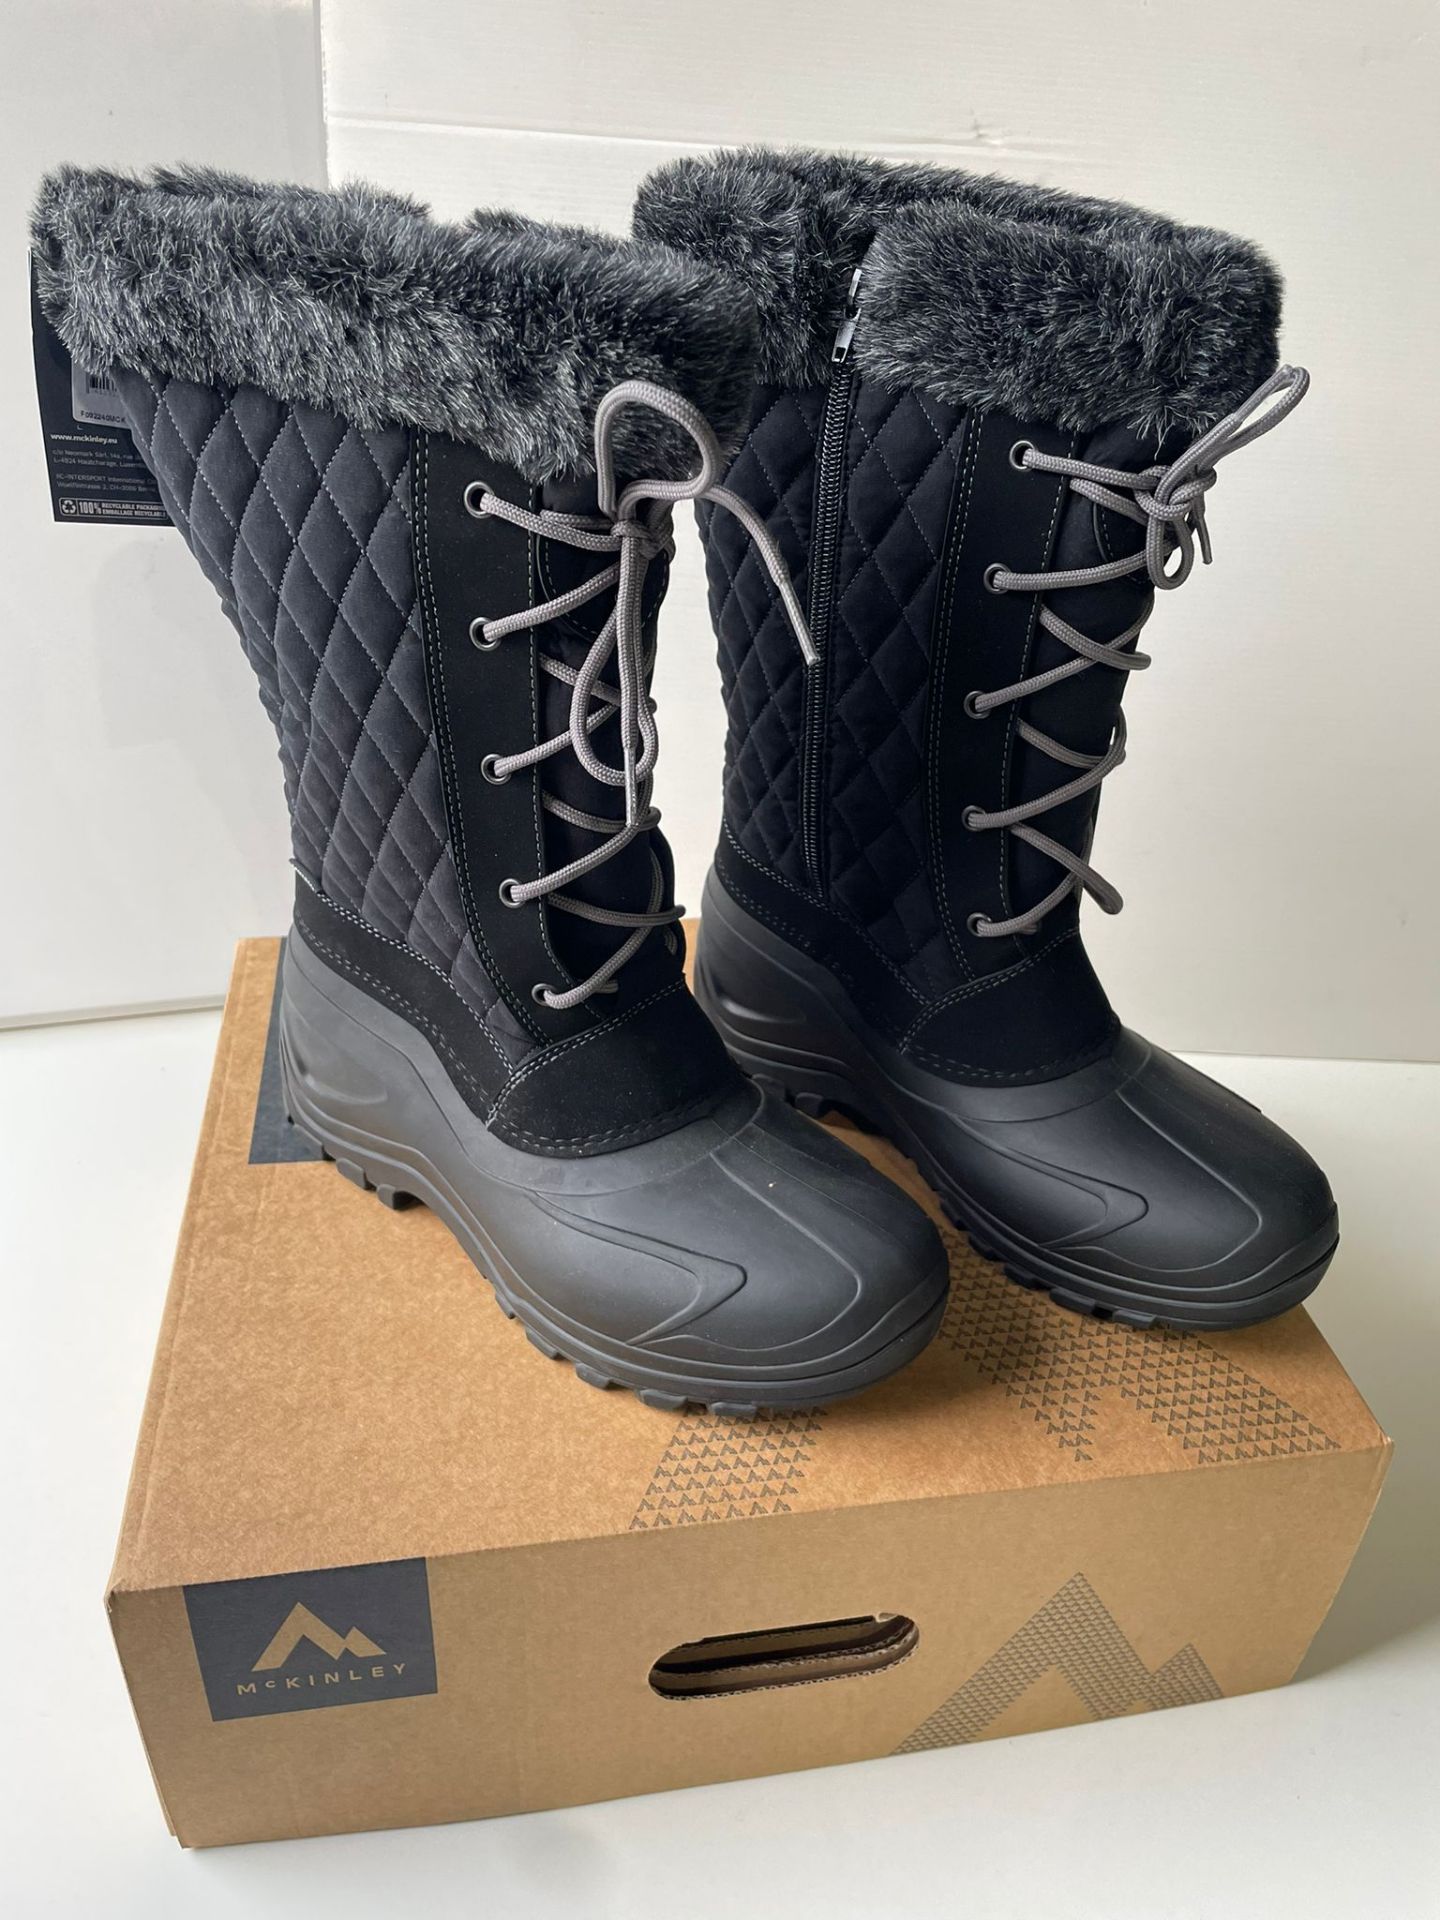 McKinley Adrianna snow boots, UK size 8